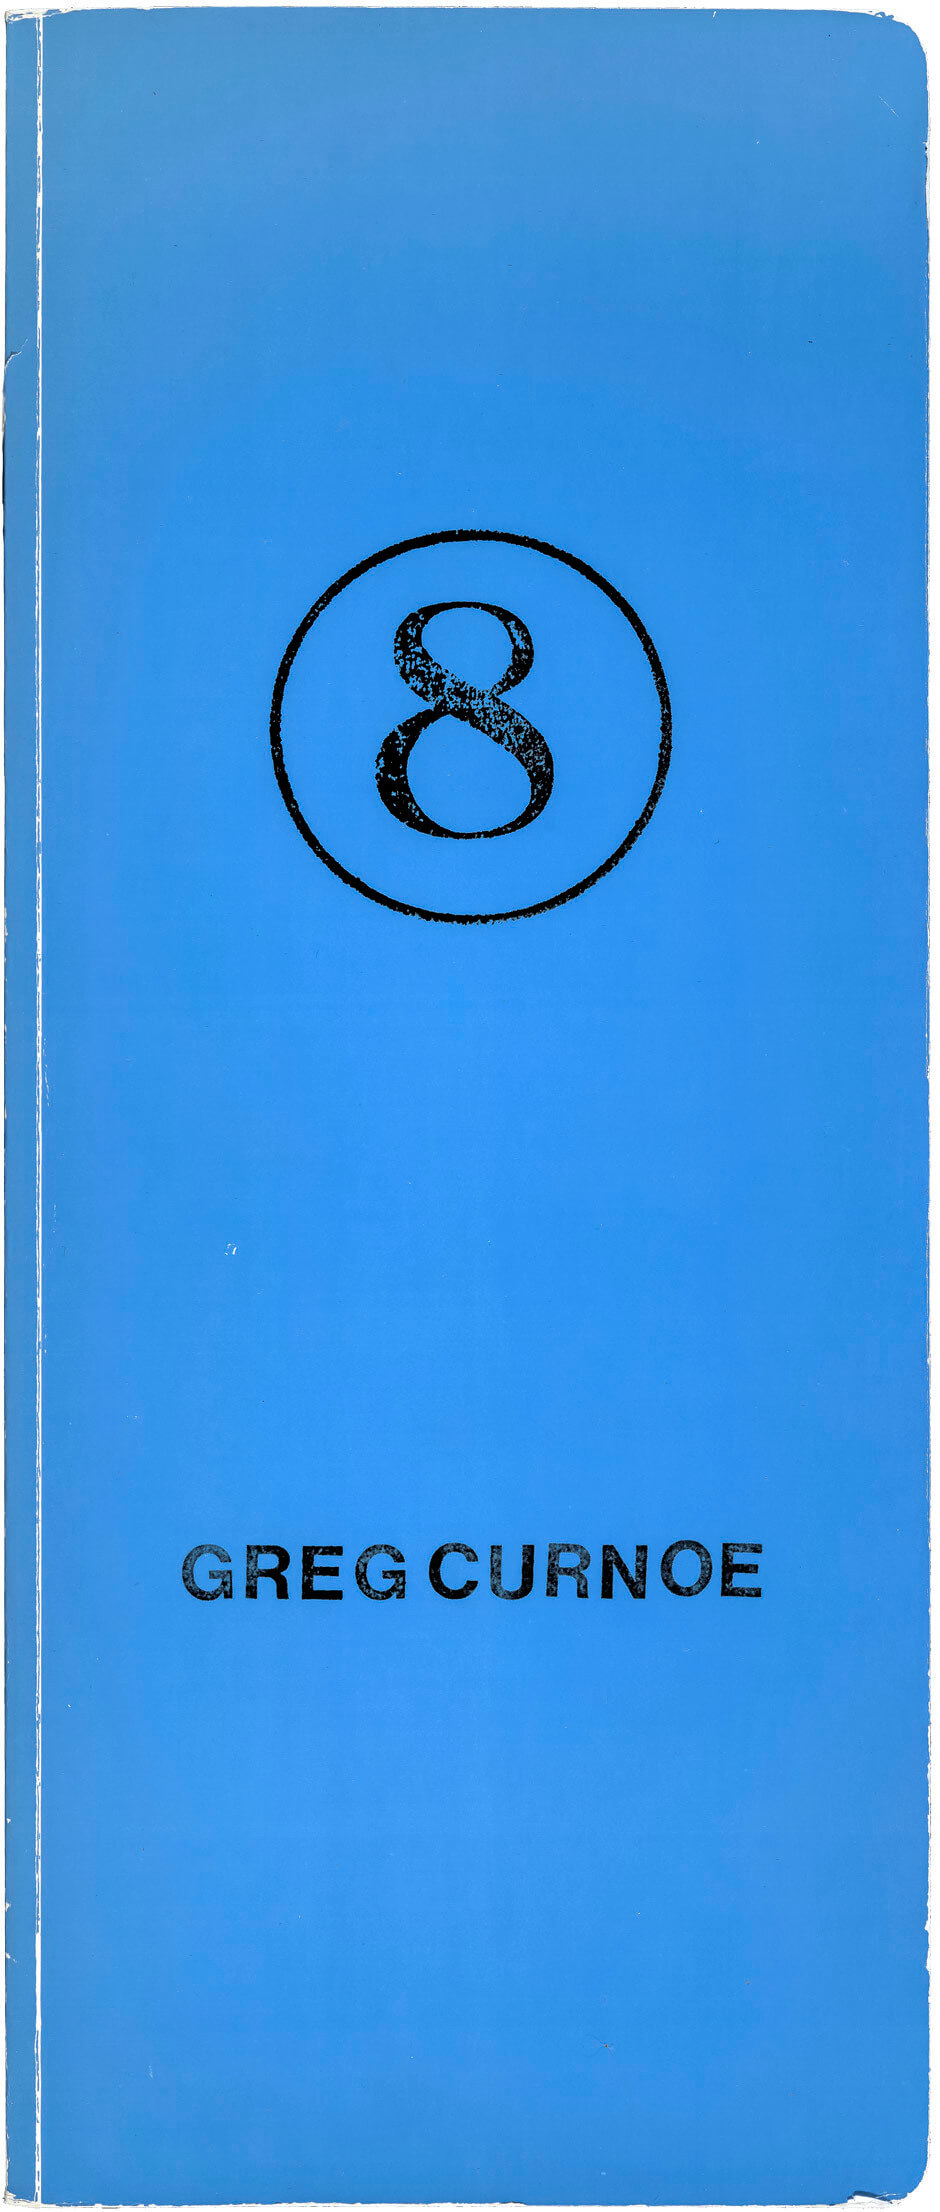 Art Canada Institute, Greg Curnoe, Blue Book #8 (Livre bleu #8)